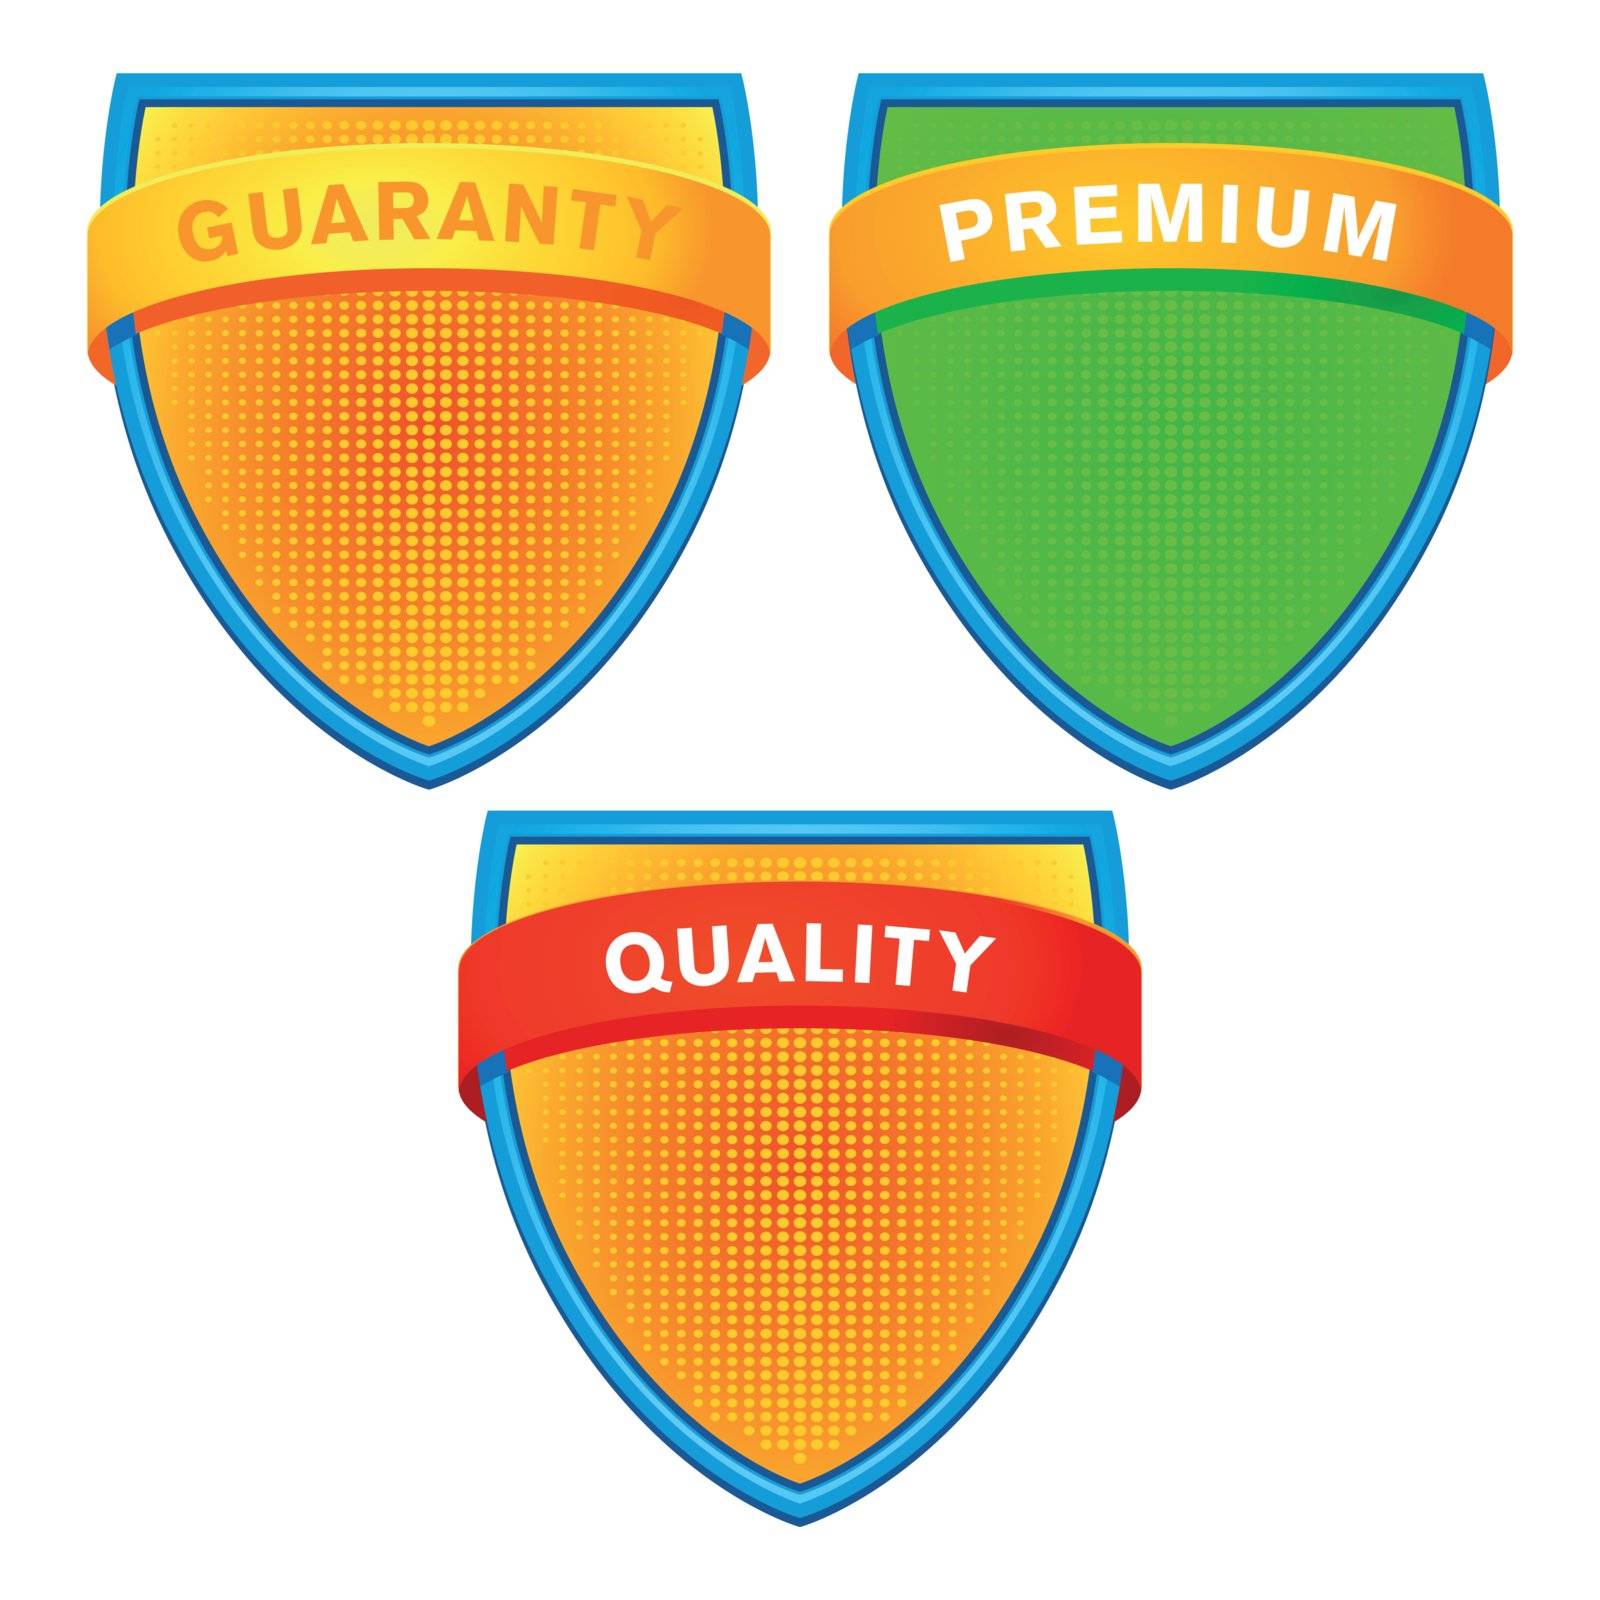 guaranty emblem